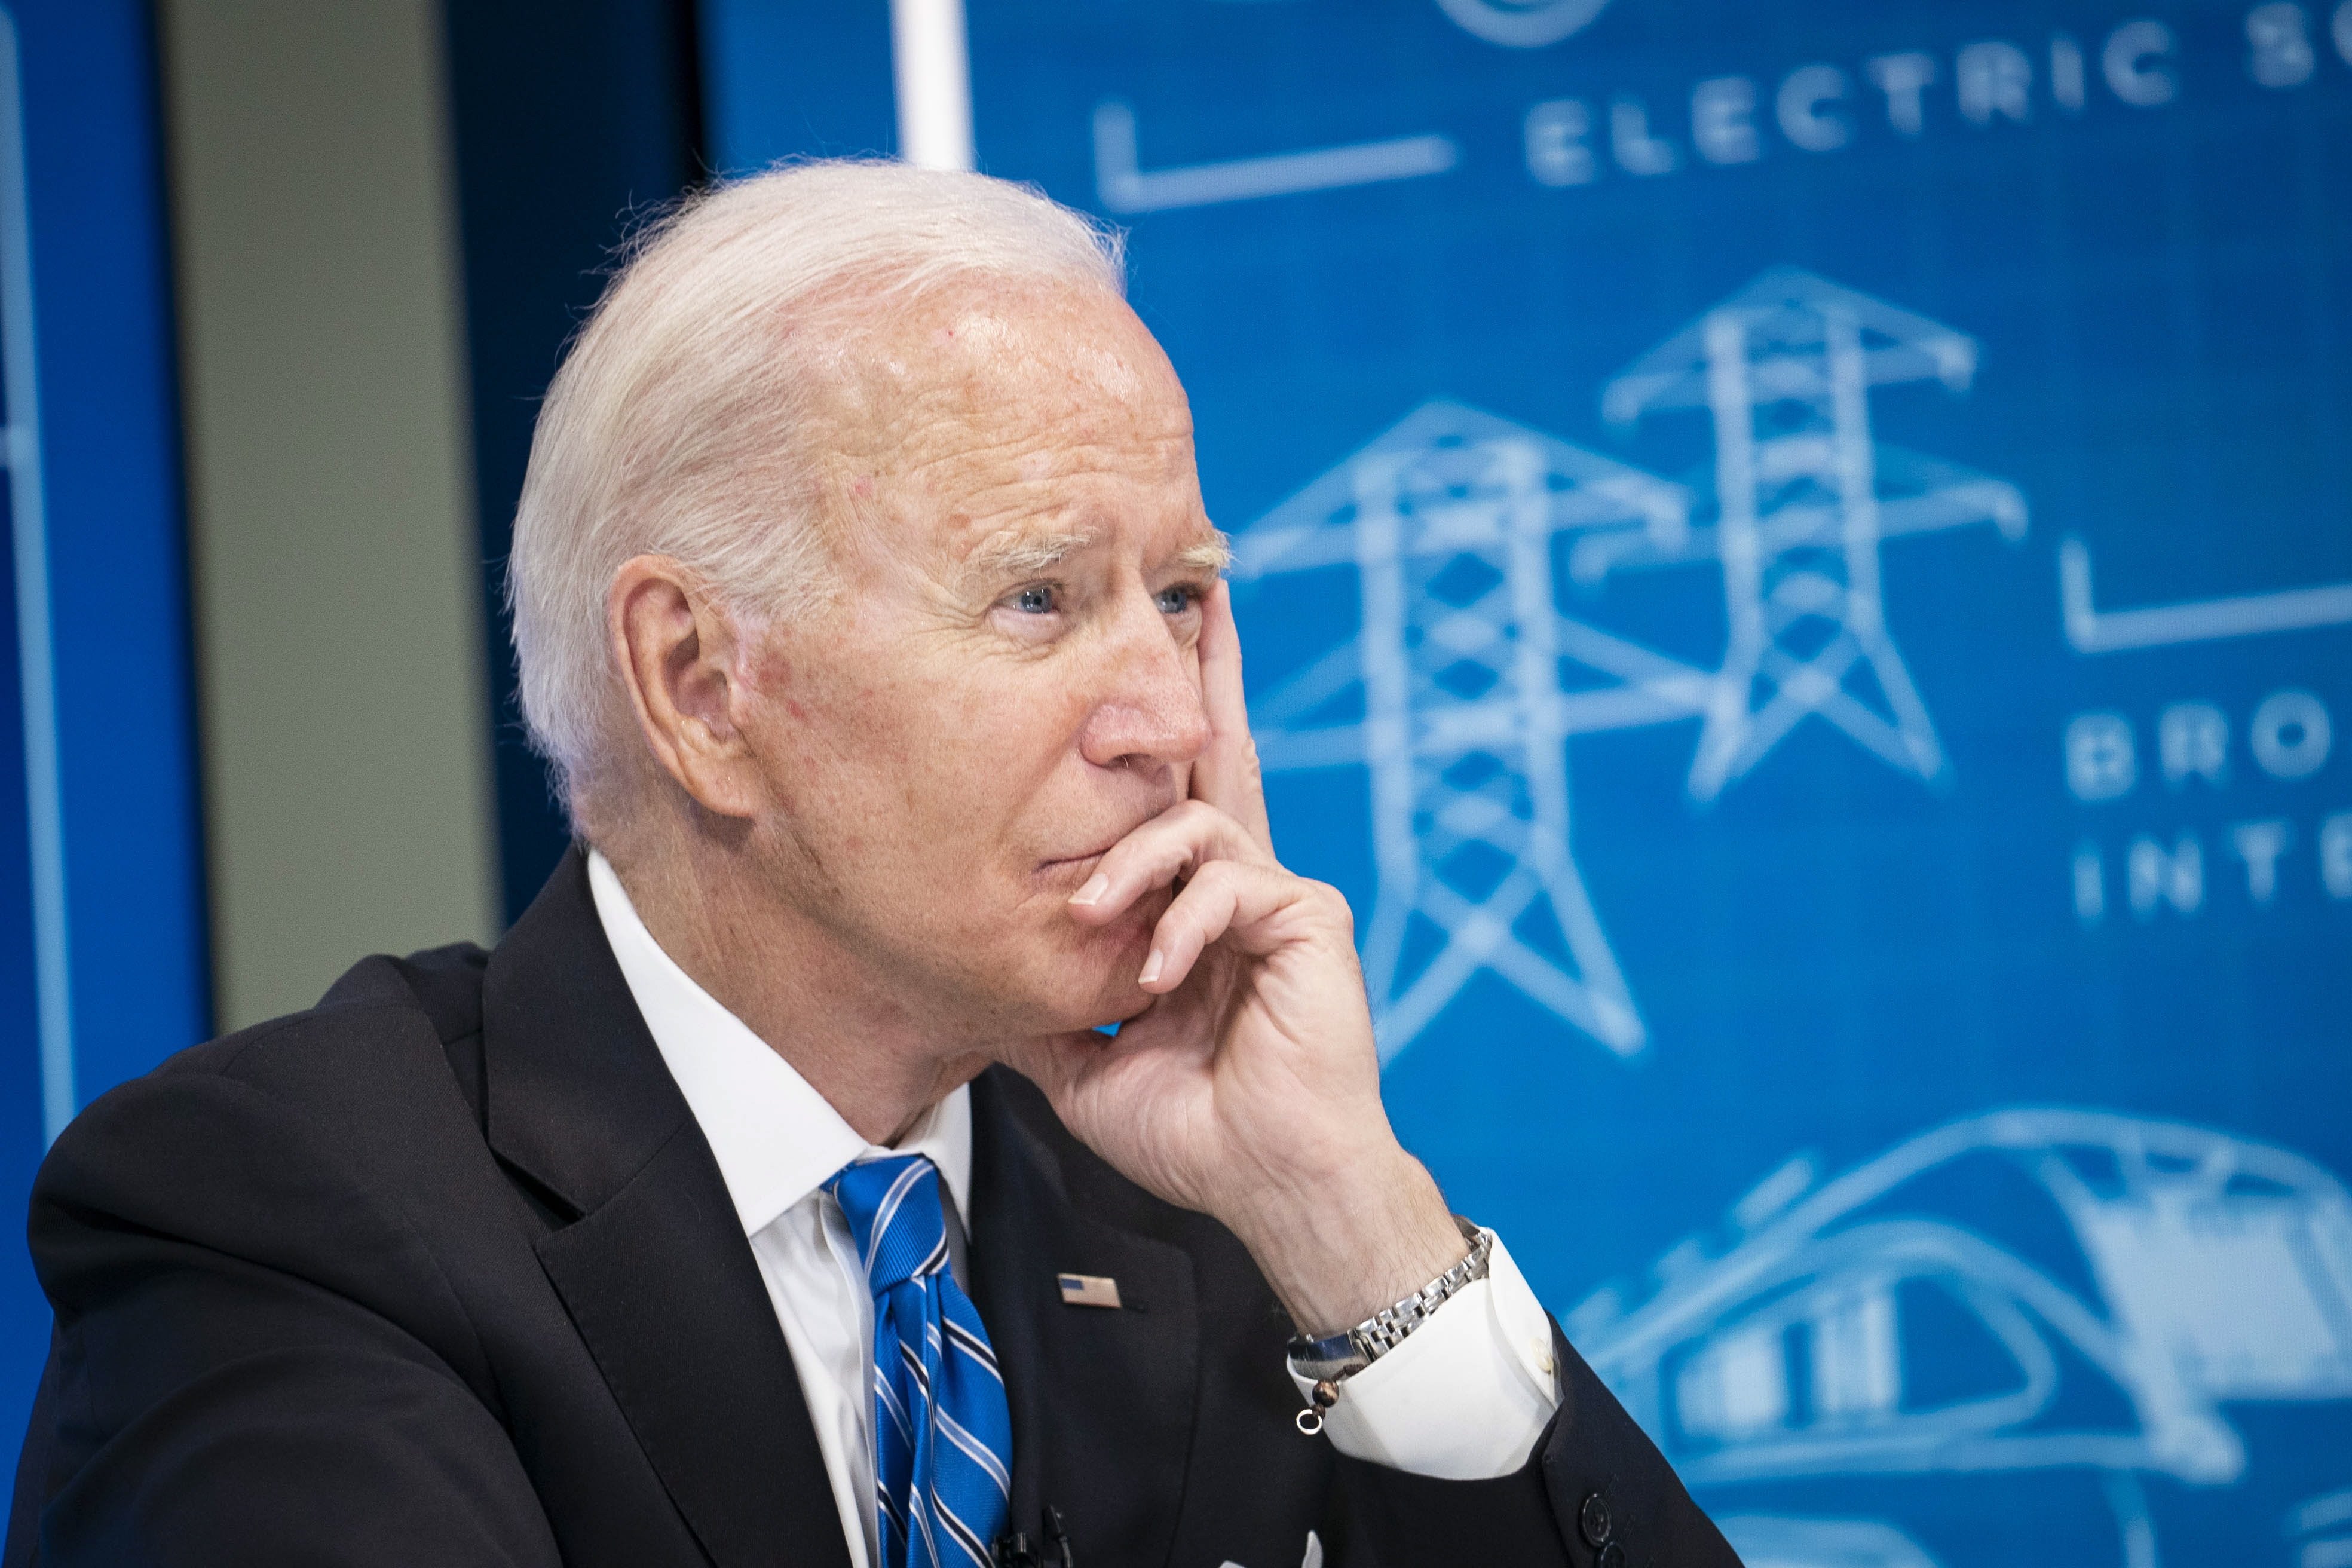 Cau la valoració de Biden per la crisi de l'Afganistan